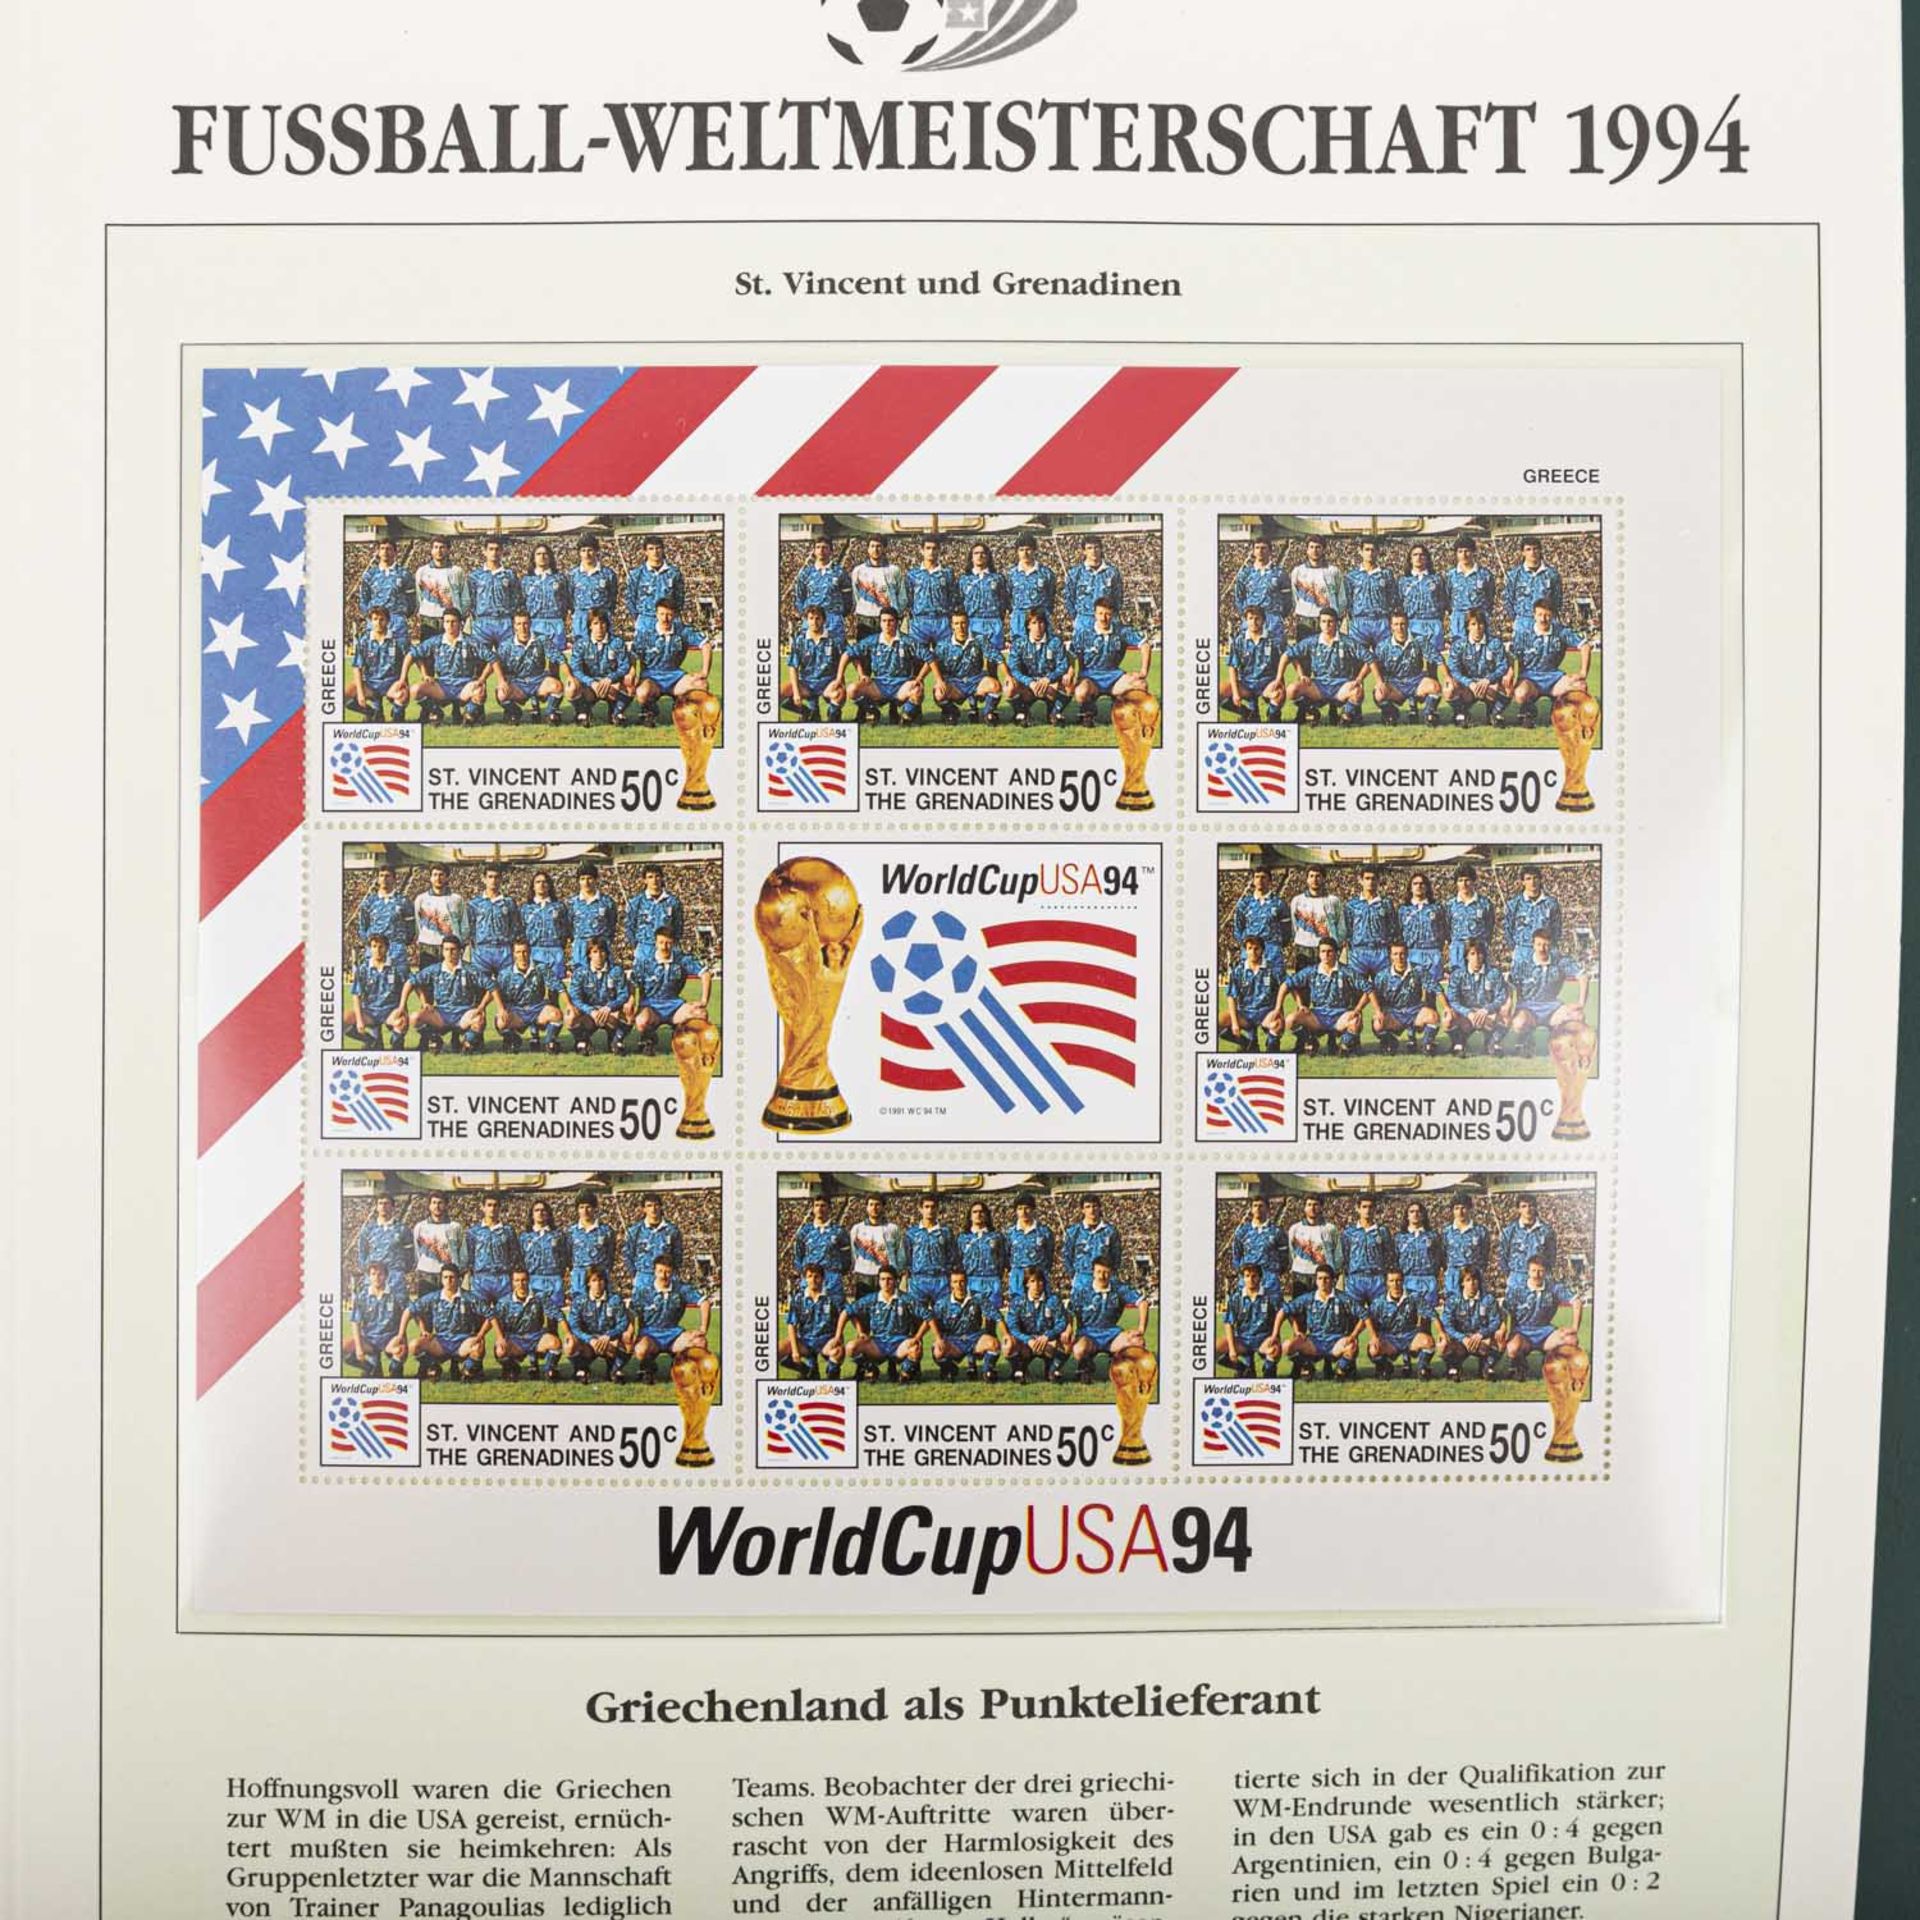 Nostalgie! Fußball WM 1994 - Diverse Wimpel und Album mit der offiziellen Briefmarkensammlungdes - Bild 2 aus 8